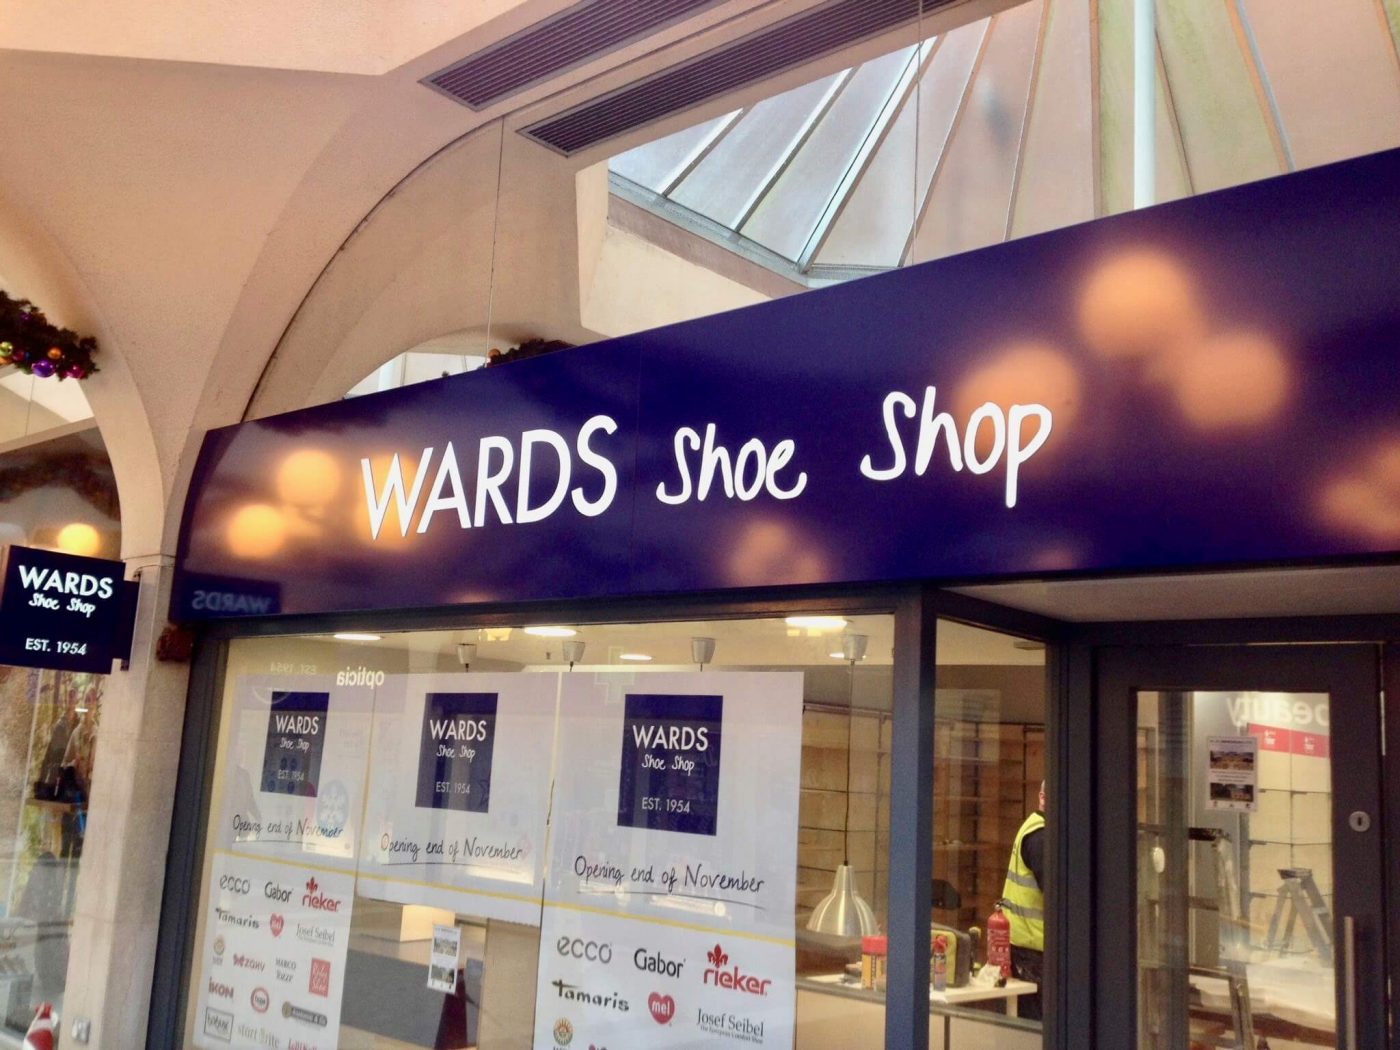 Wards Shoe Shop